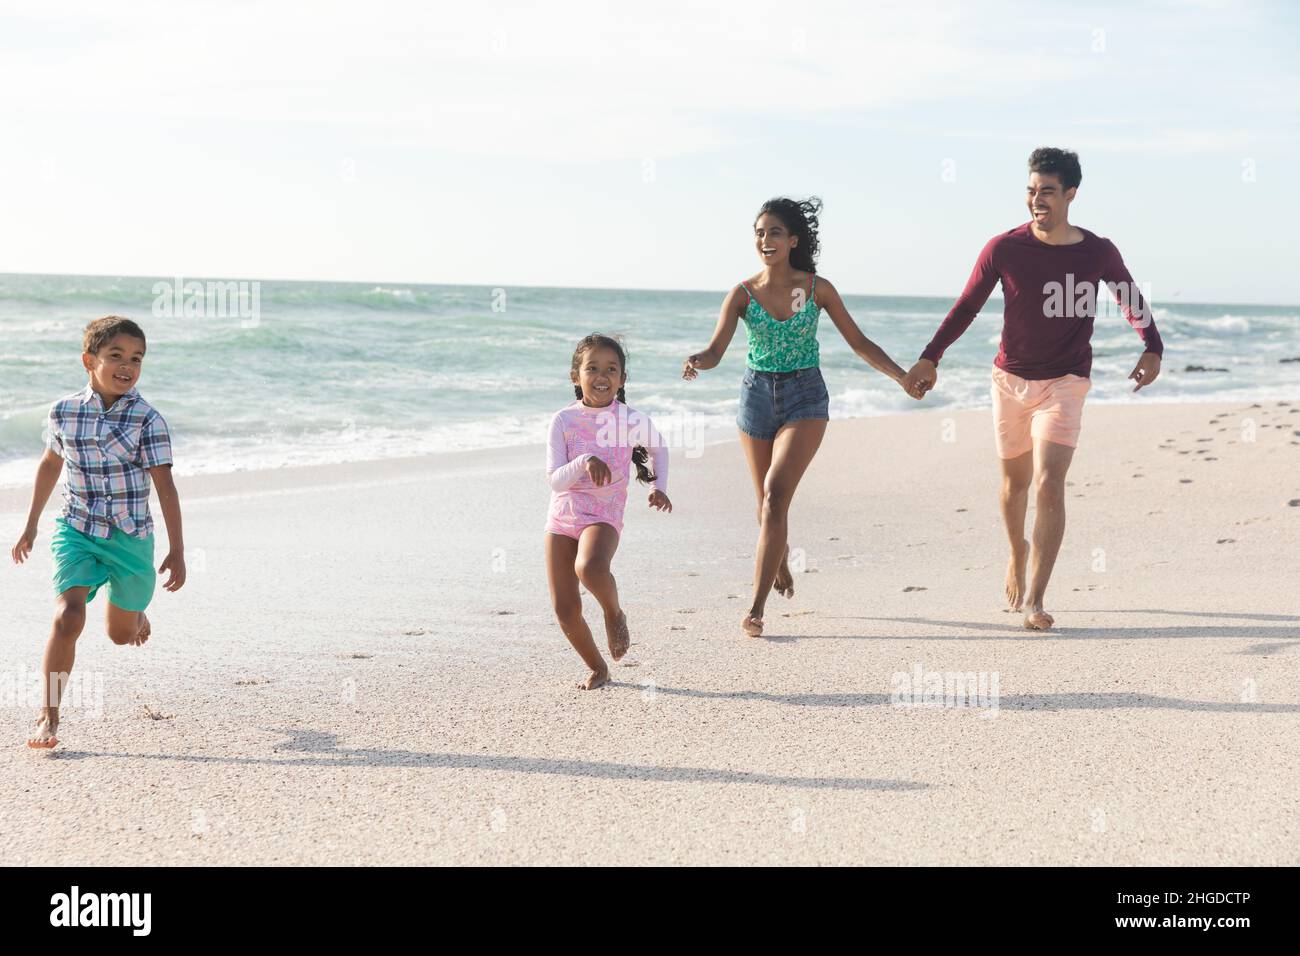 Toute la famille multiraciale court ensemble sur le rivage à la plage contre le ciel pendant la journée ensoleillée Banque D'Images